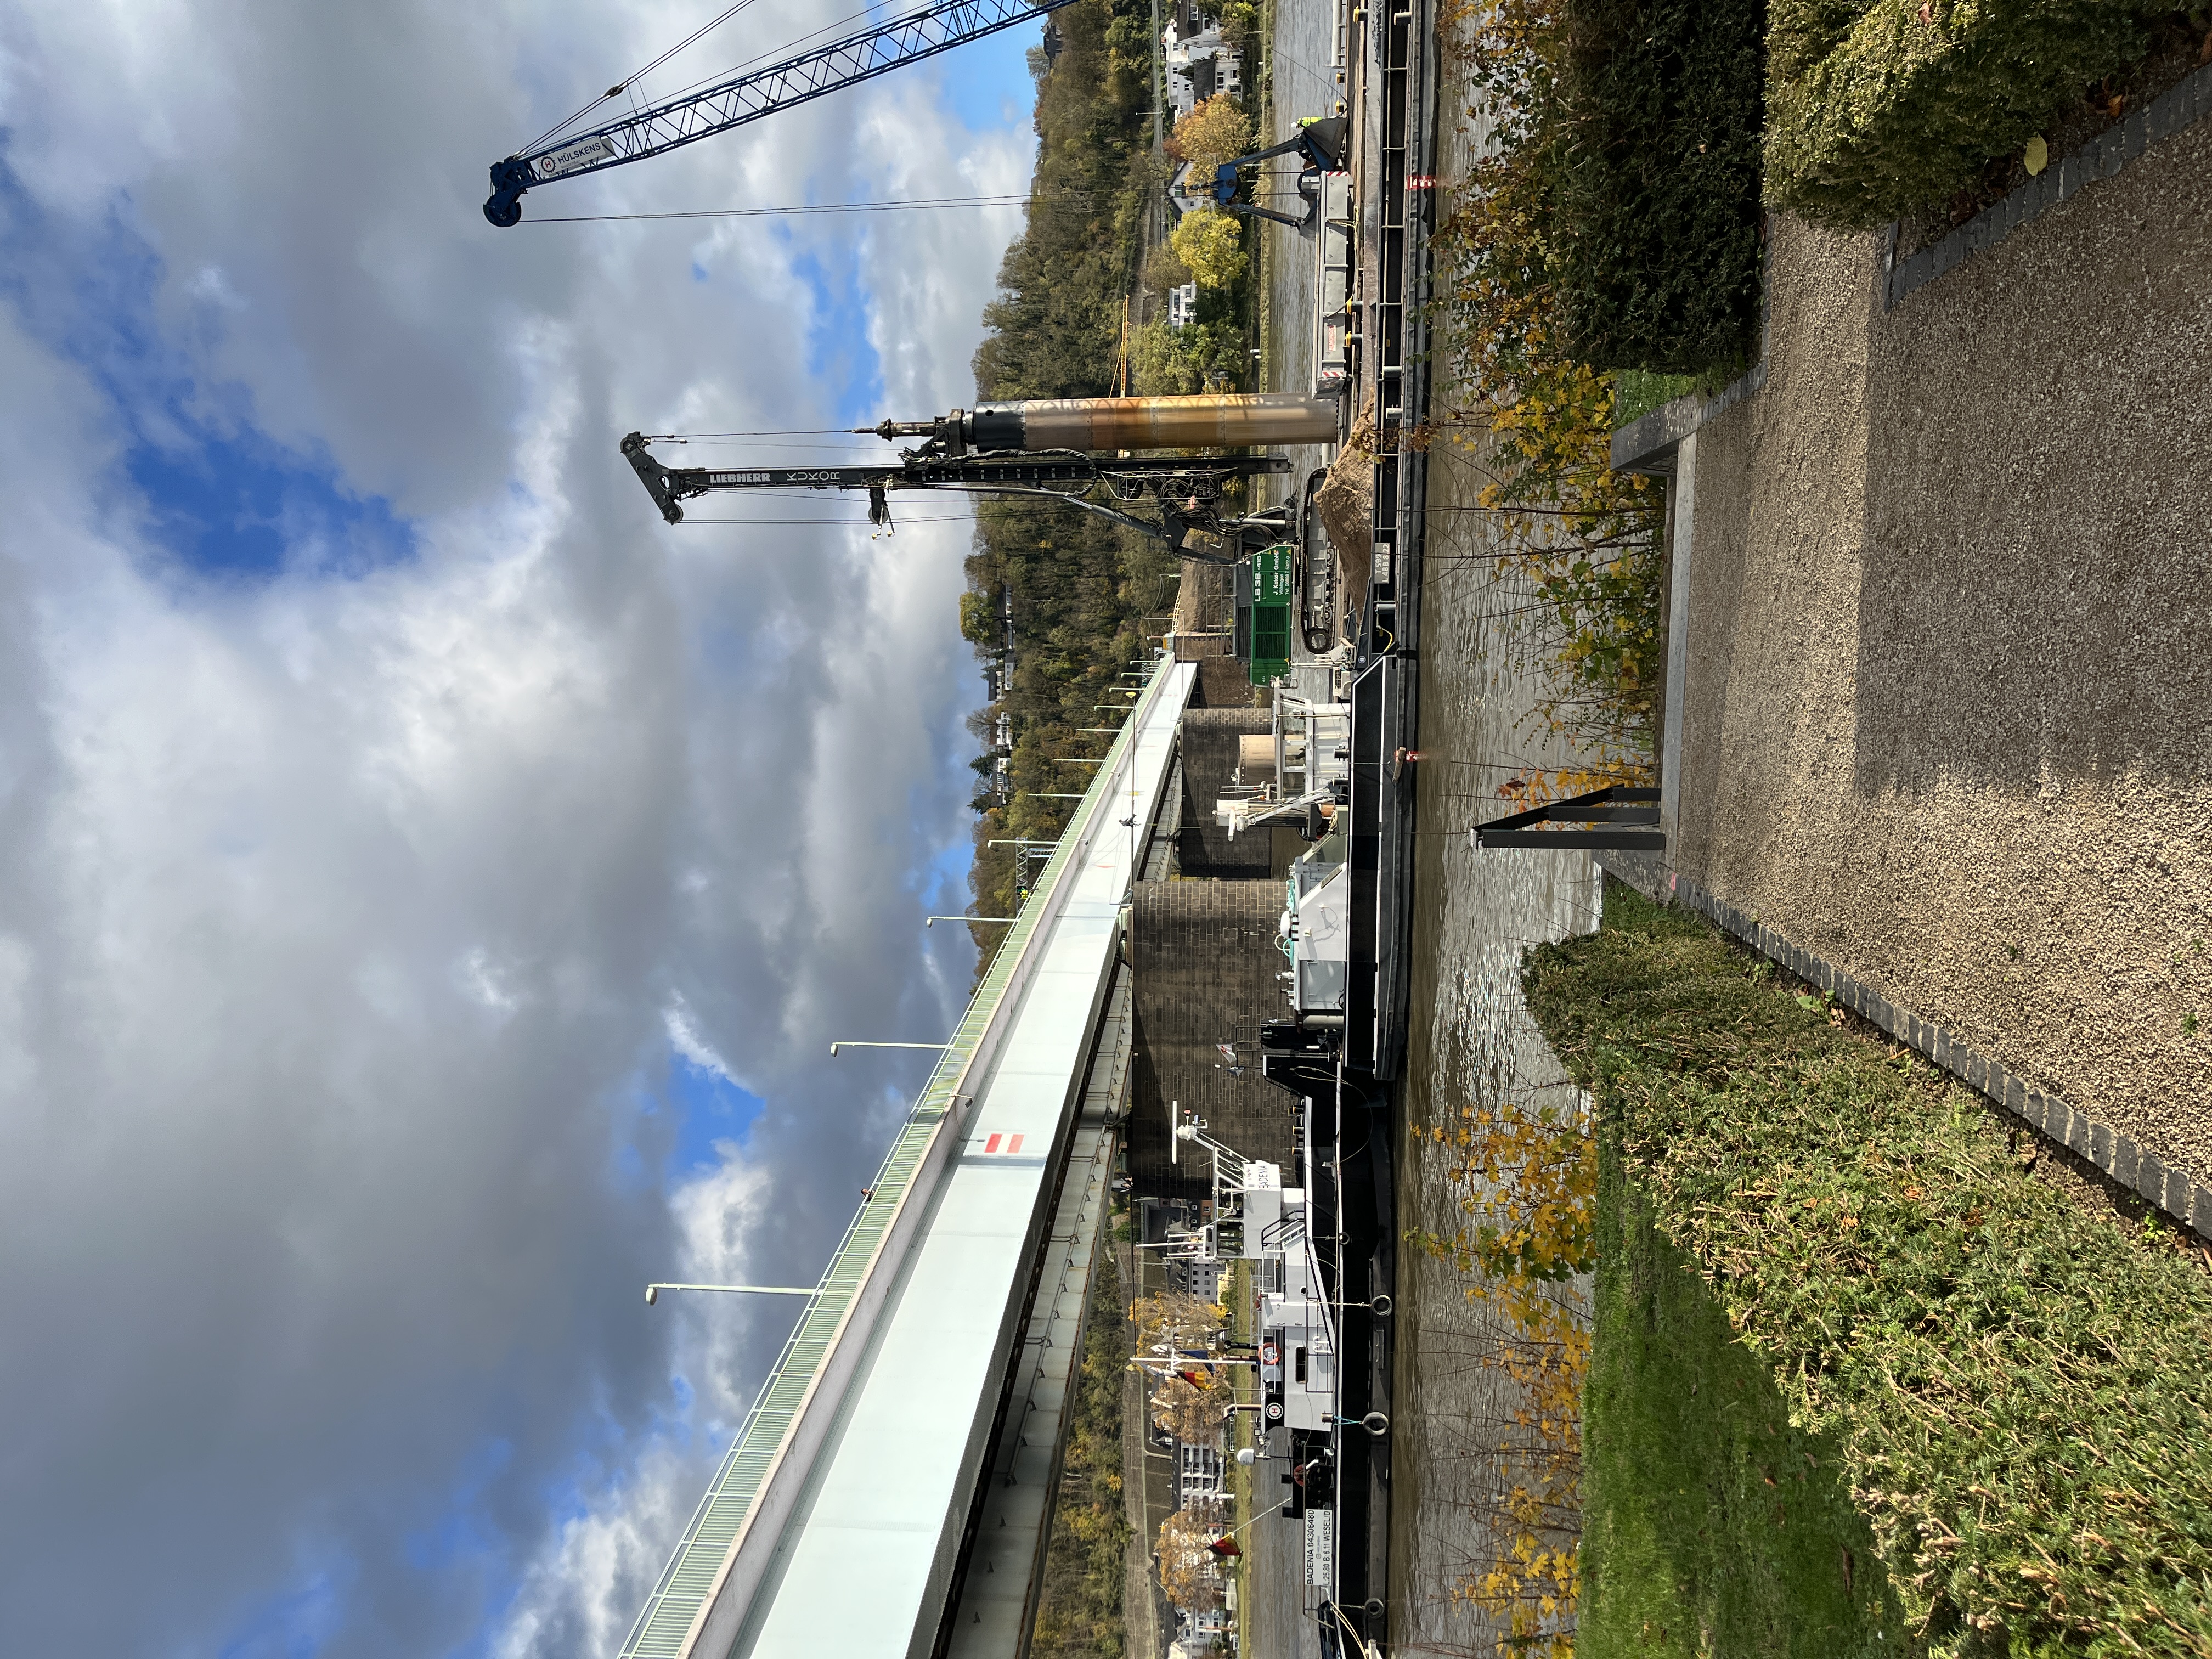  Industrieklettereinsatz an der Pfaffendorfer Brücke in Koblenz